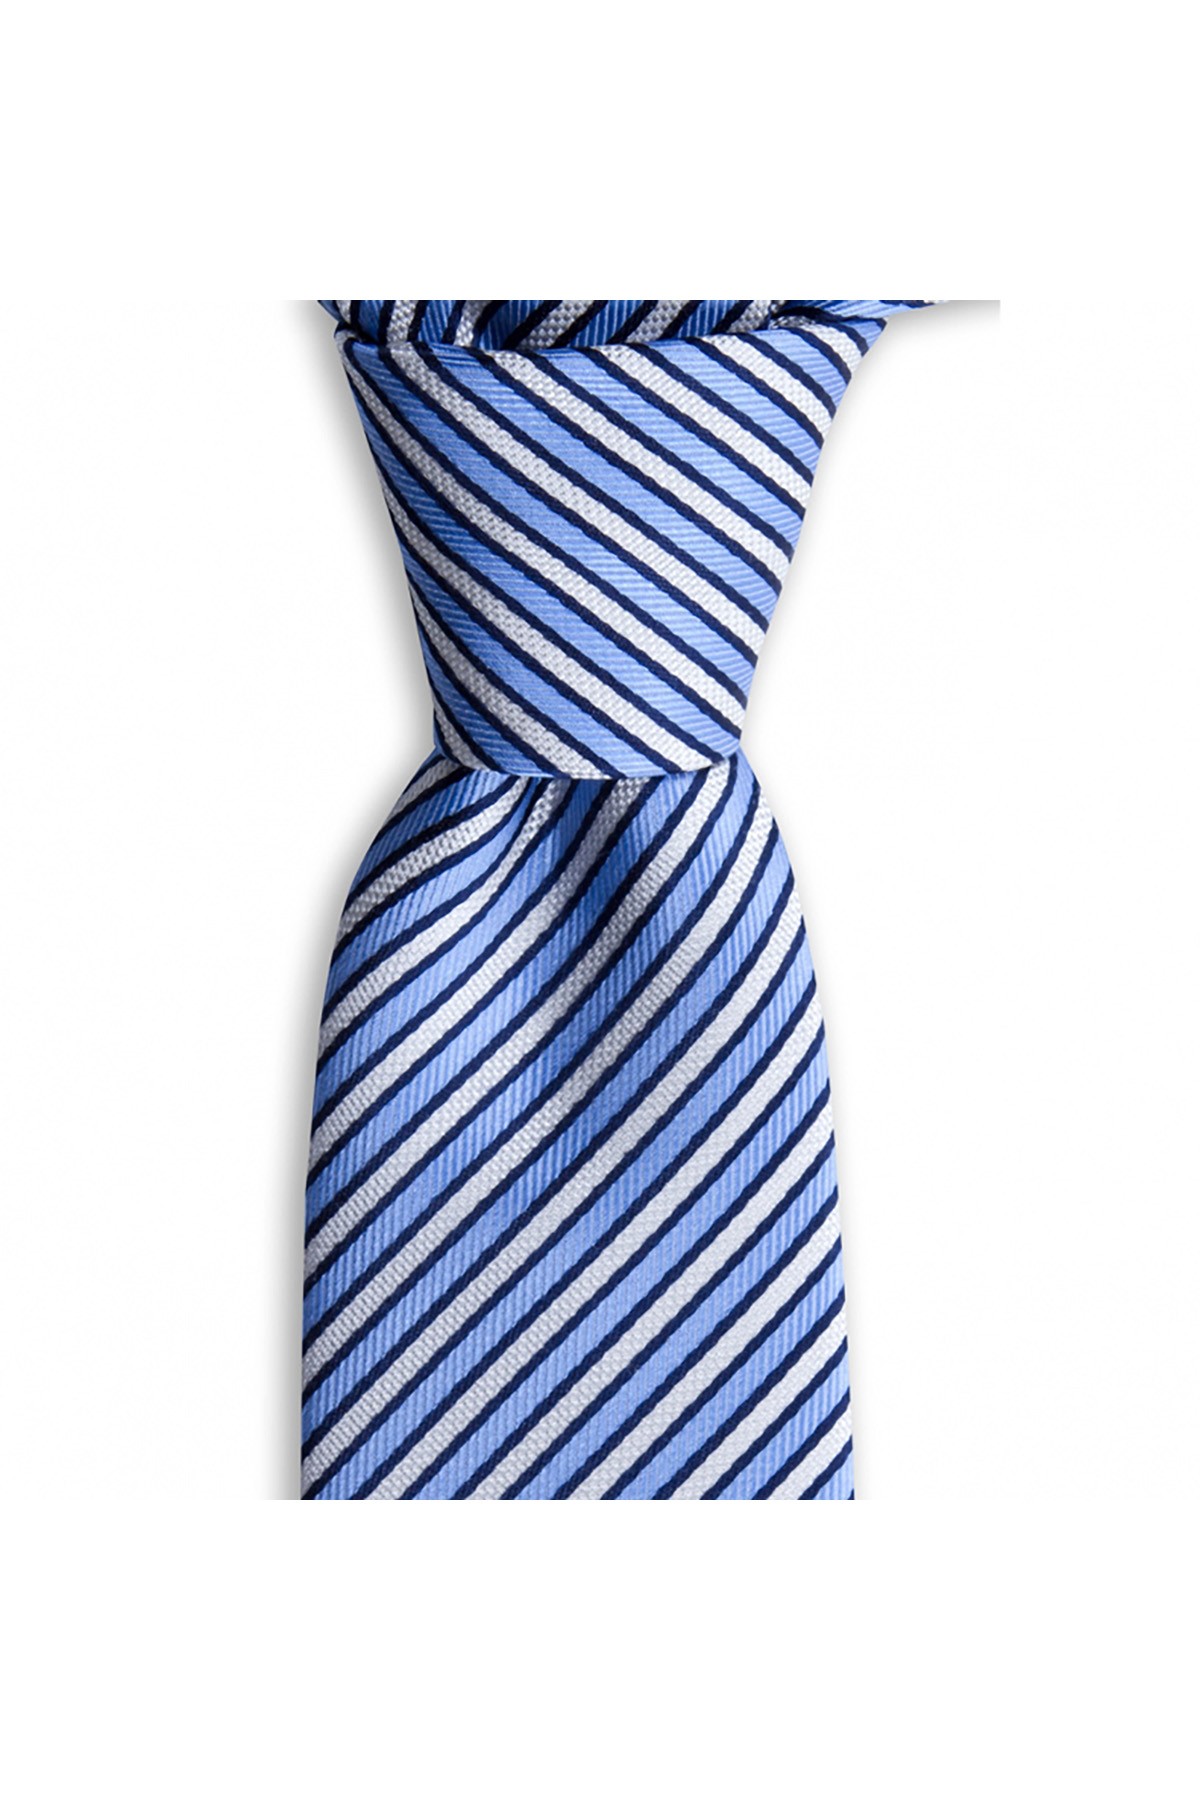 Çok çizgili 7,5 cm genişliğinde klasik ipek kravat - Mavi